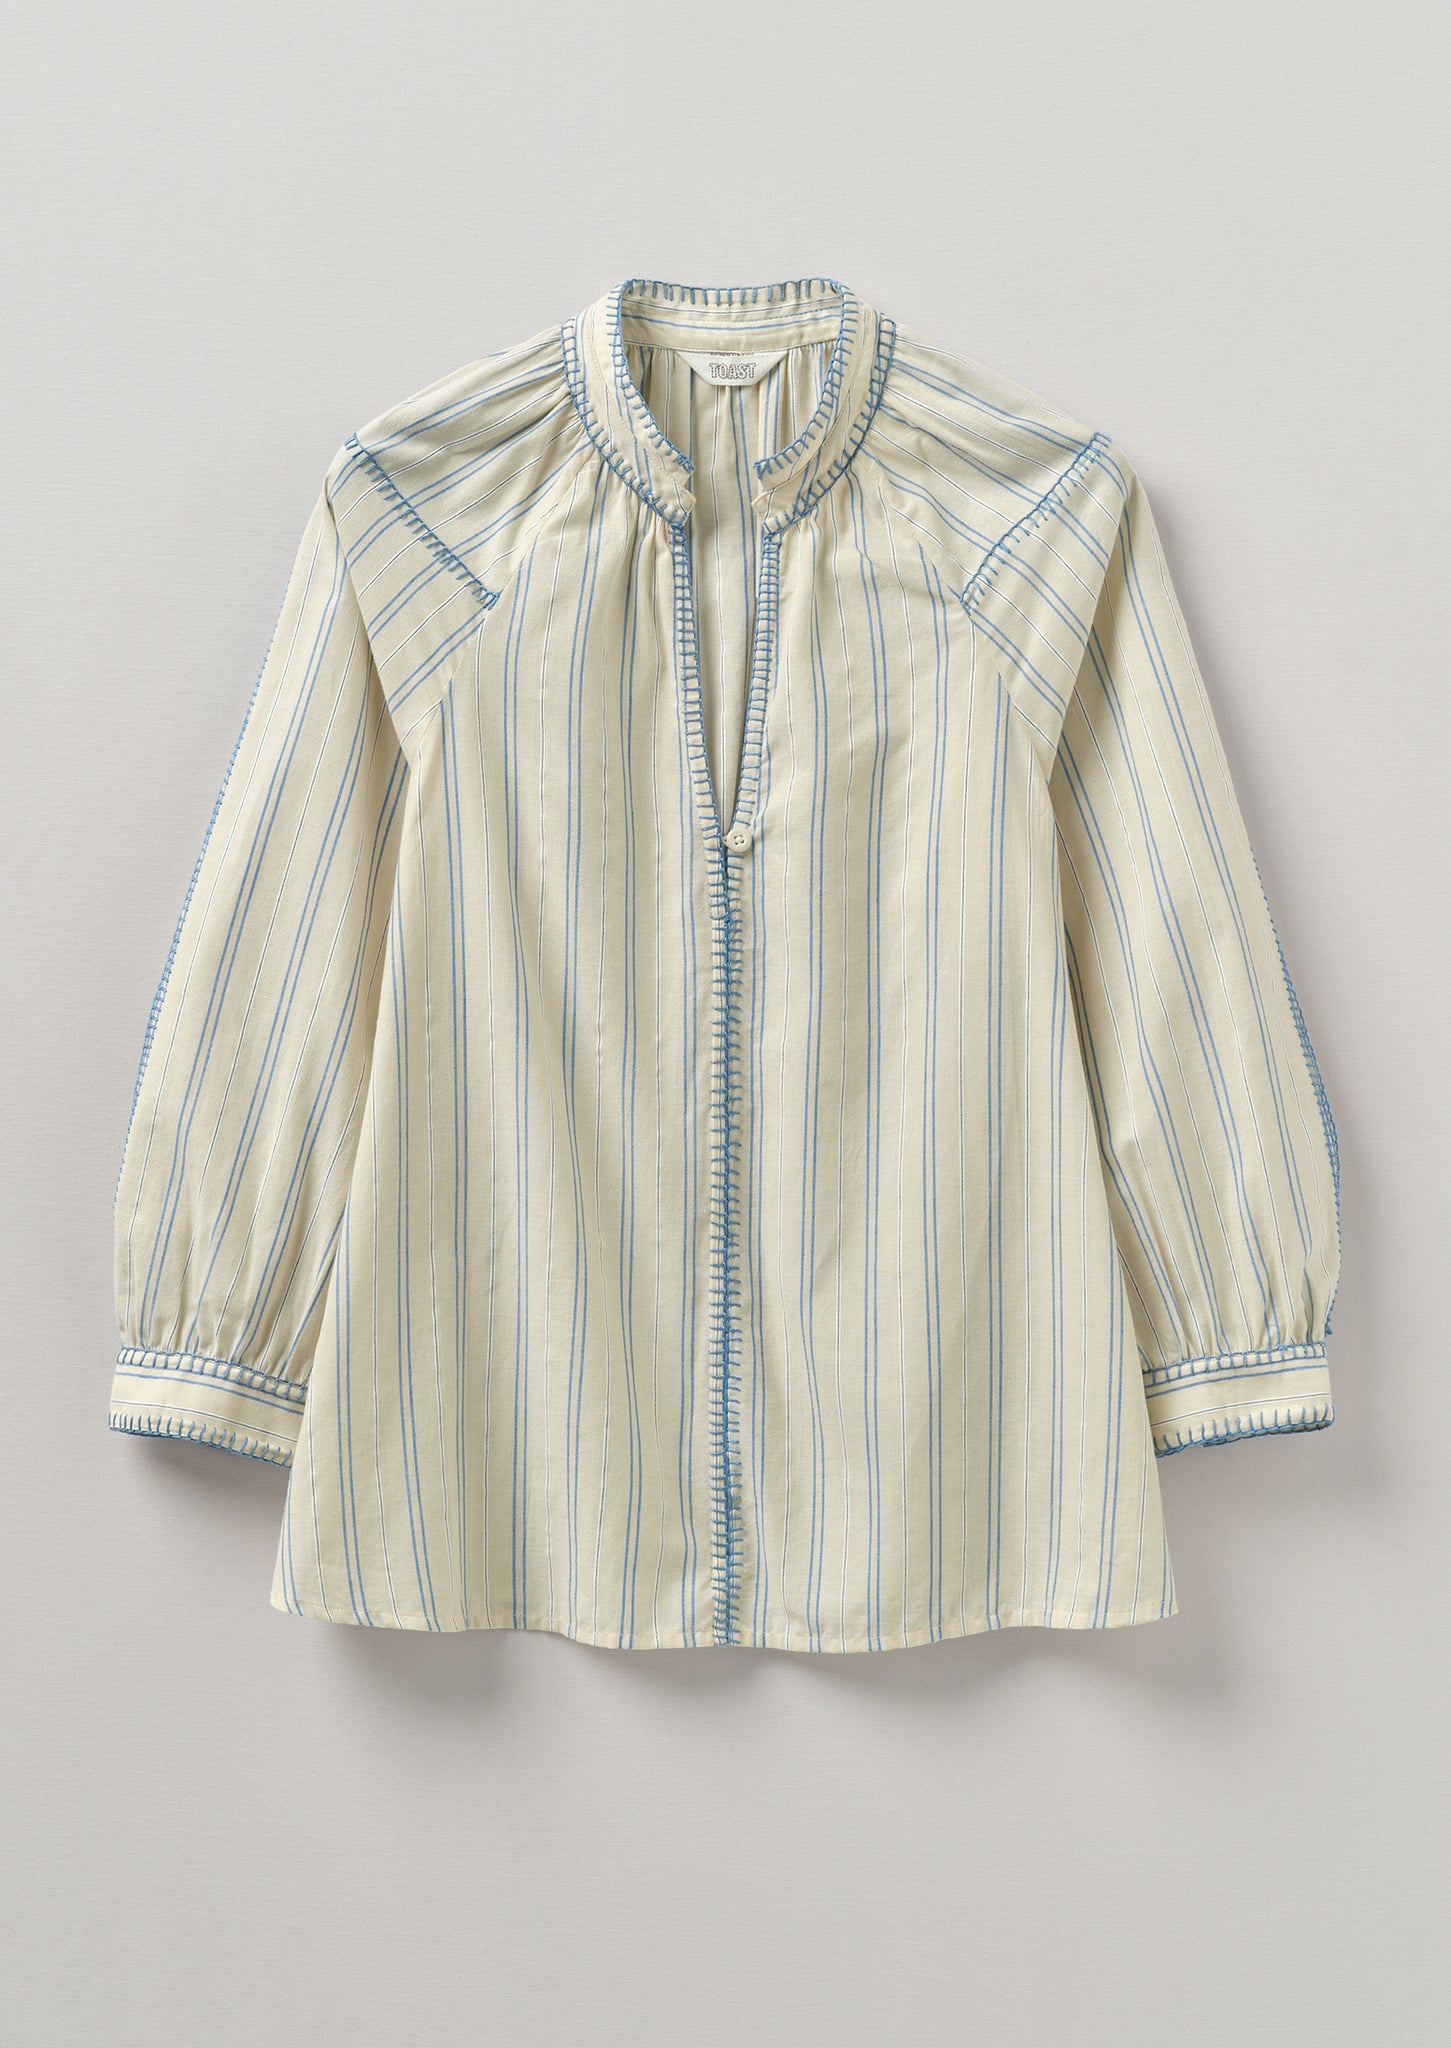 Blanket Stitch Stripe Cotton Top | Delft Blue | TOAST